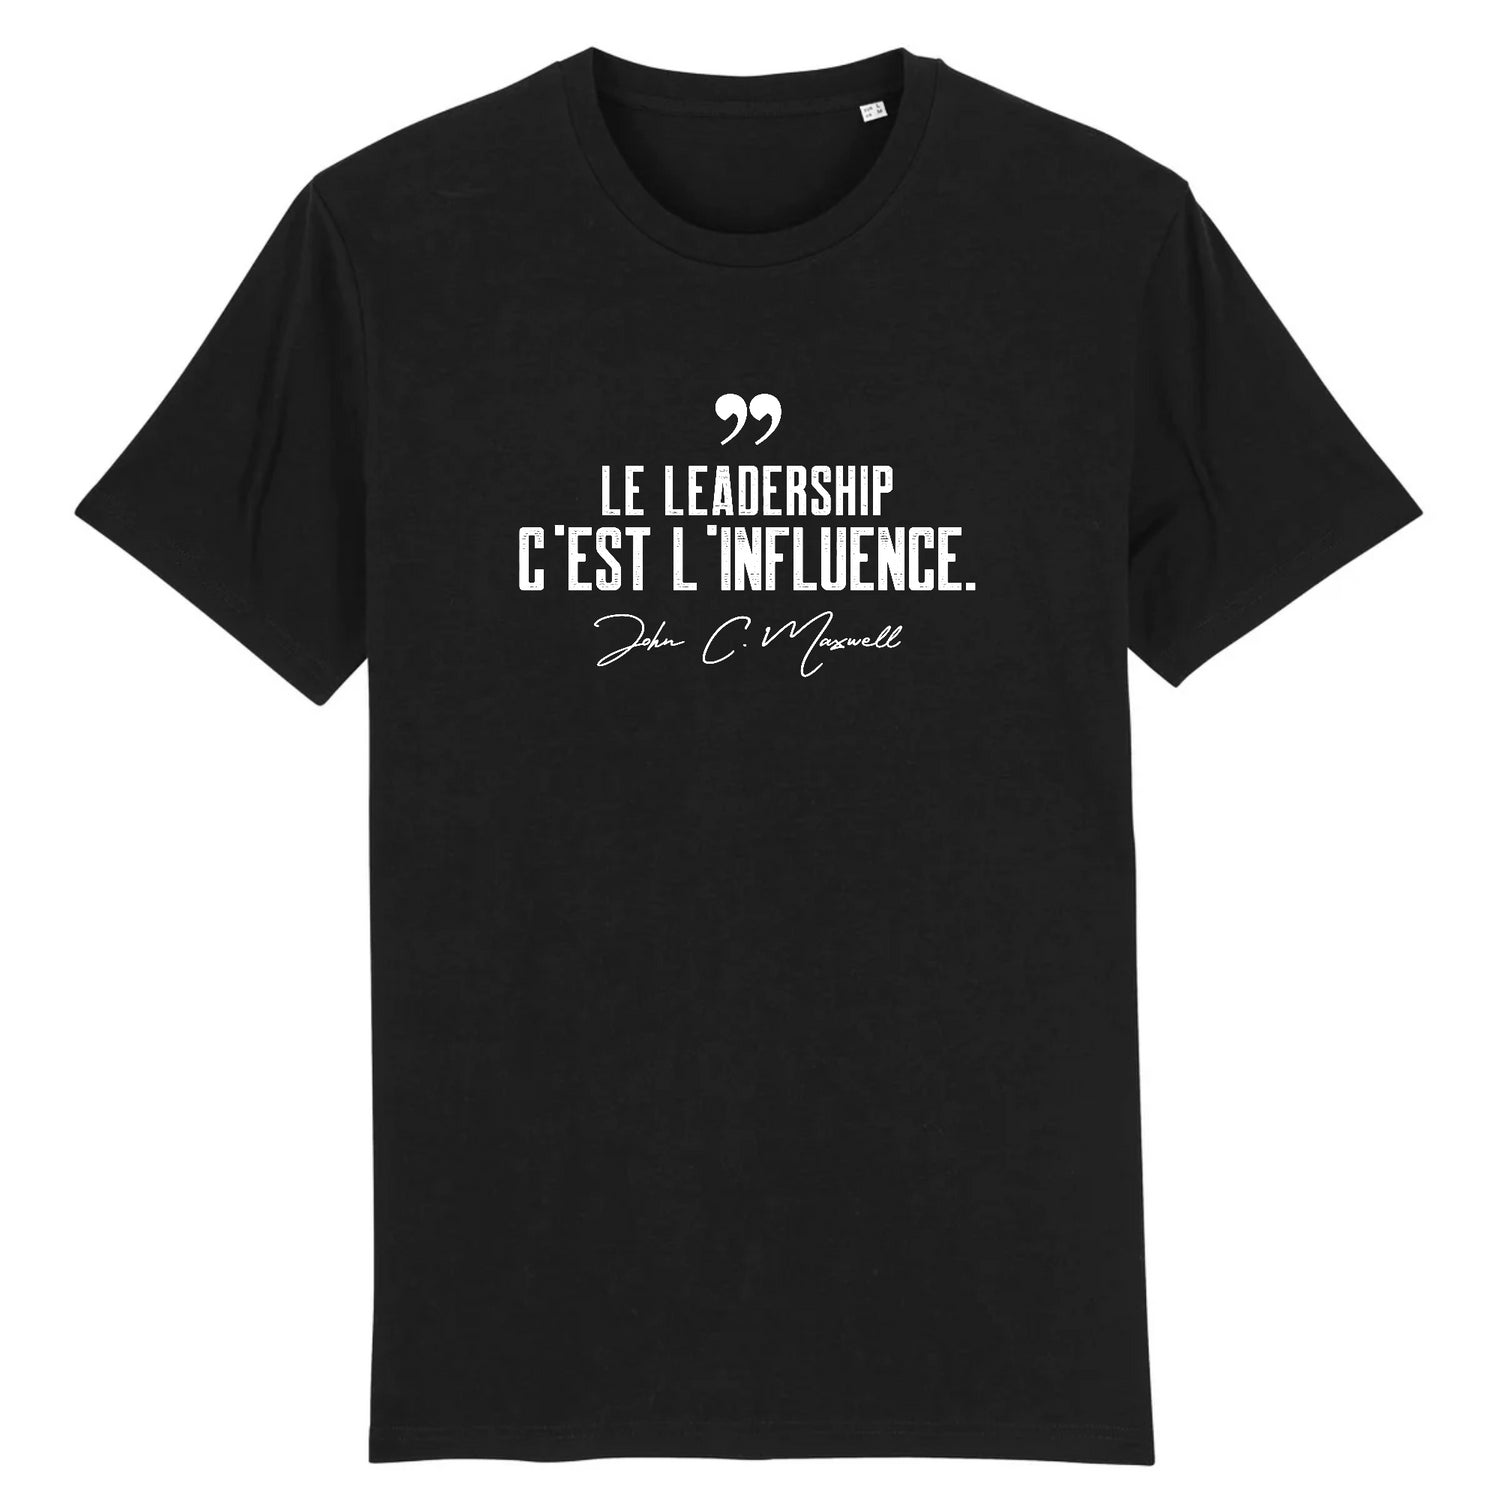 "Le leadership c'est l'influence"